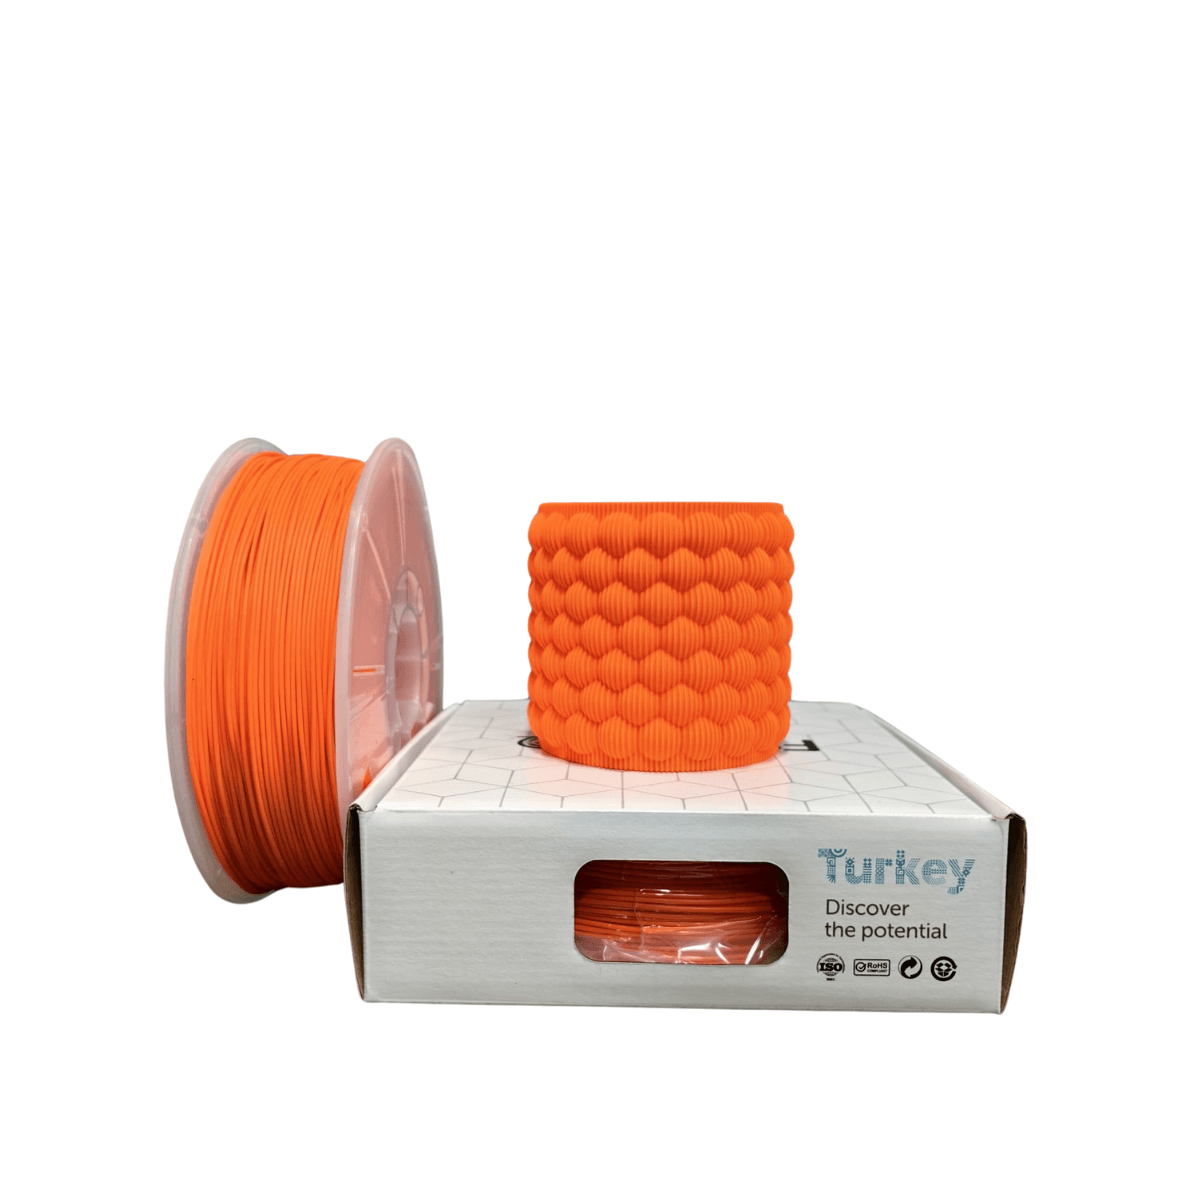 Filetto Pla+ Filament 1.75mm 1KG - Orange